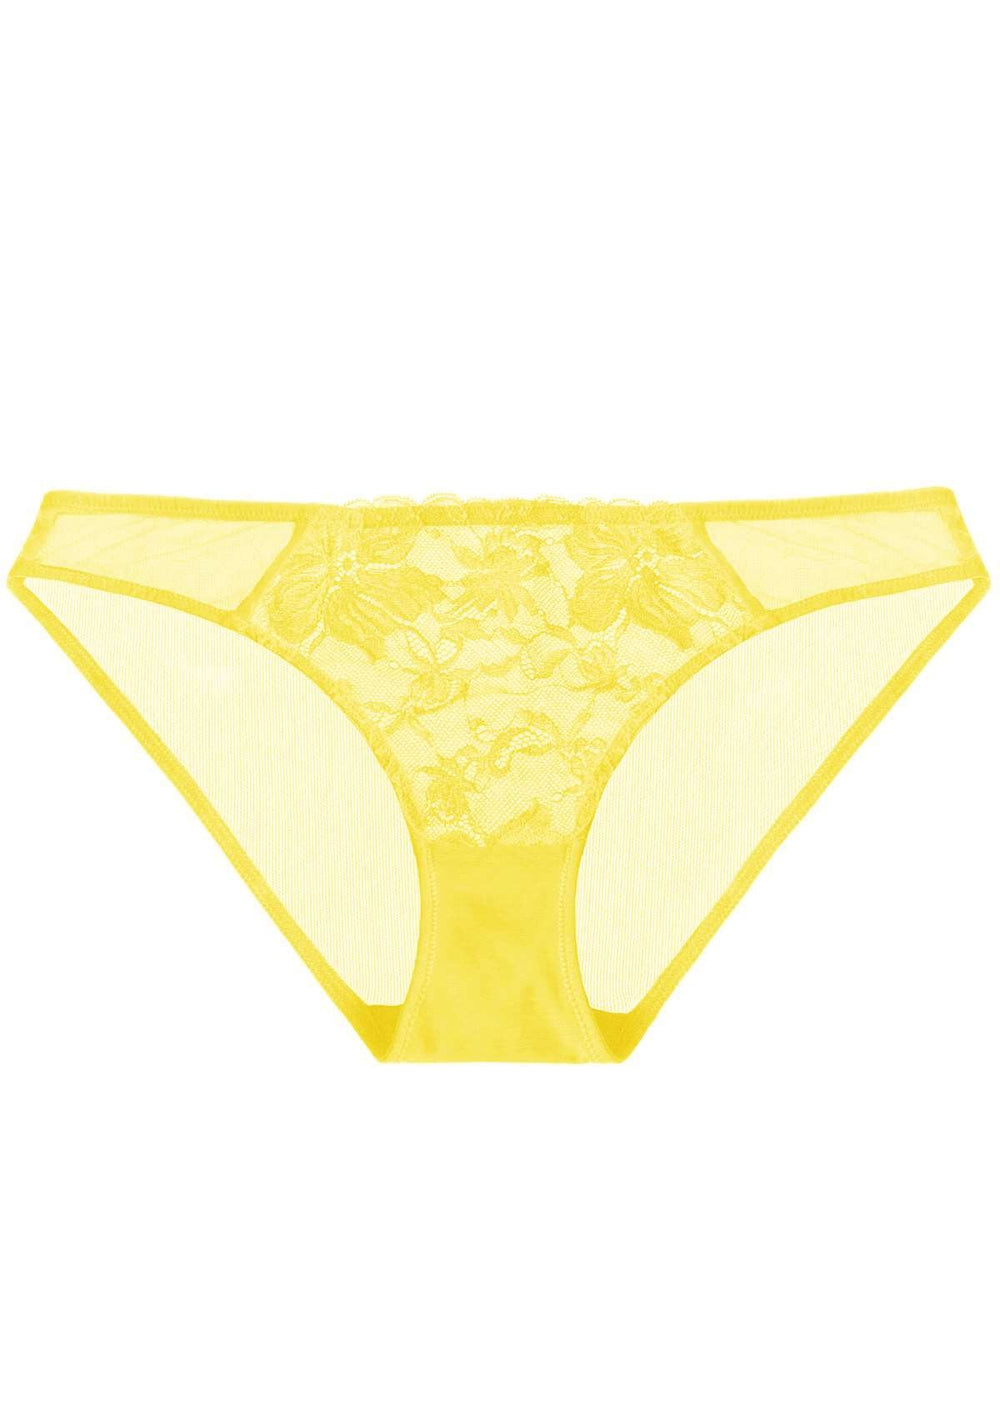 Women's Yellow String Bikini Panties  Non private Underwear – non private